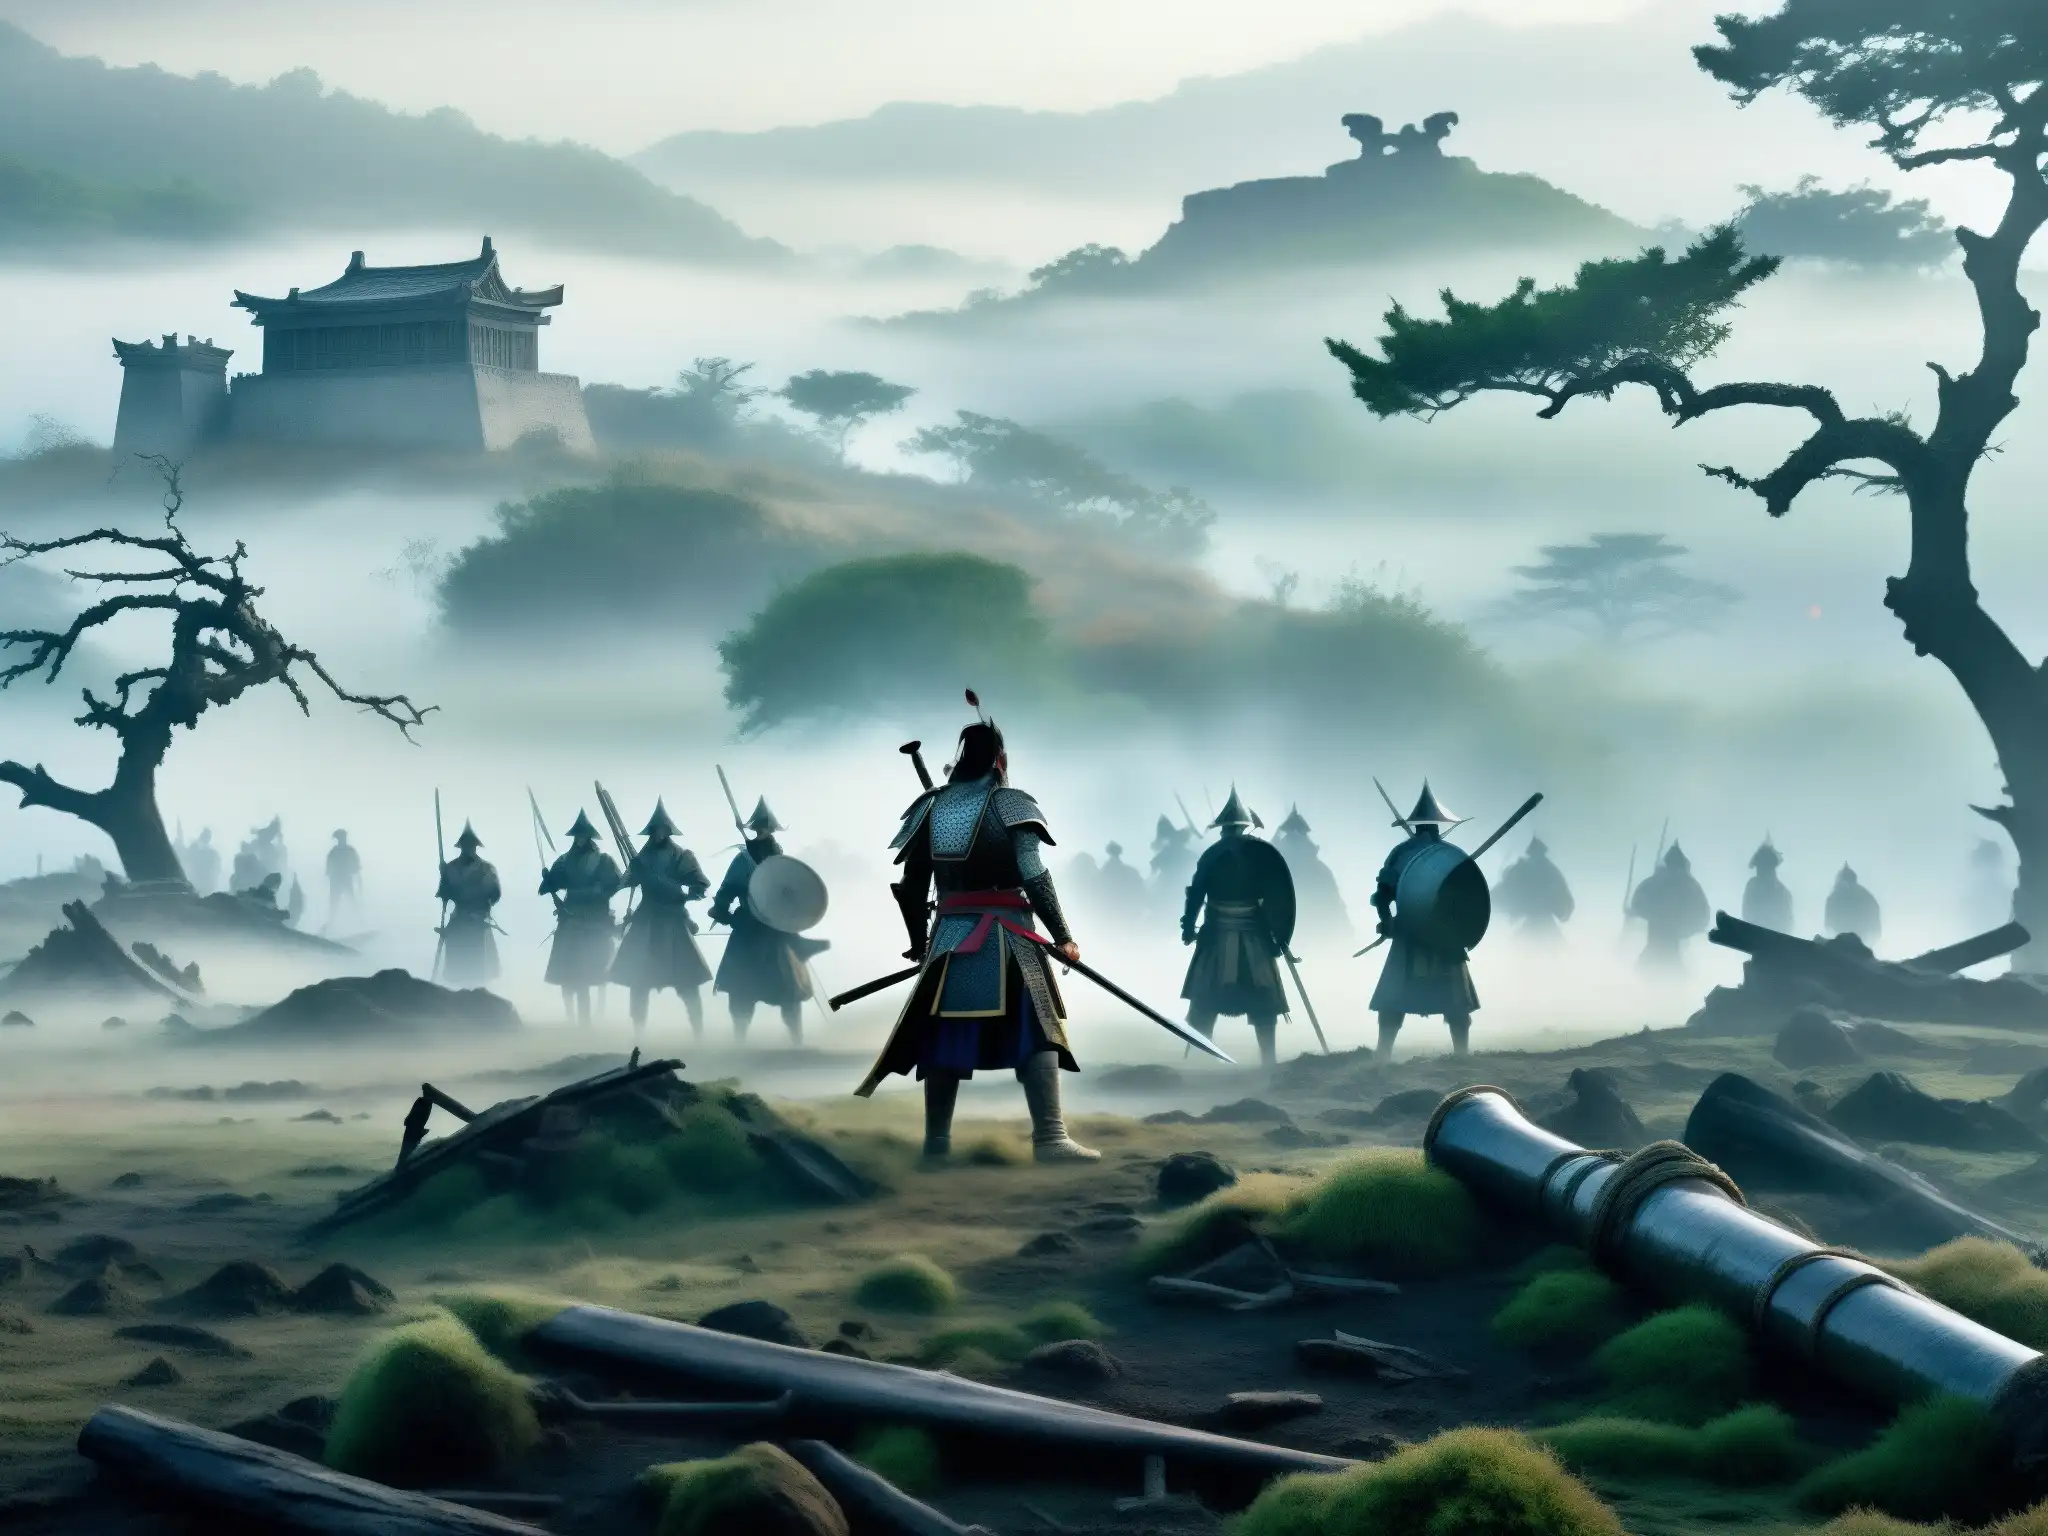 Imagen de apariciones fantasma de antiguos samuráis en una neblinosa batalla, evocando misterio y la atmósfera sobrenatural de las batallas samurái